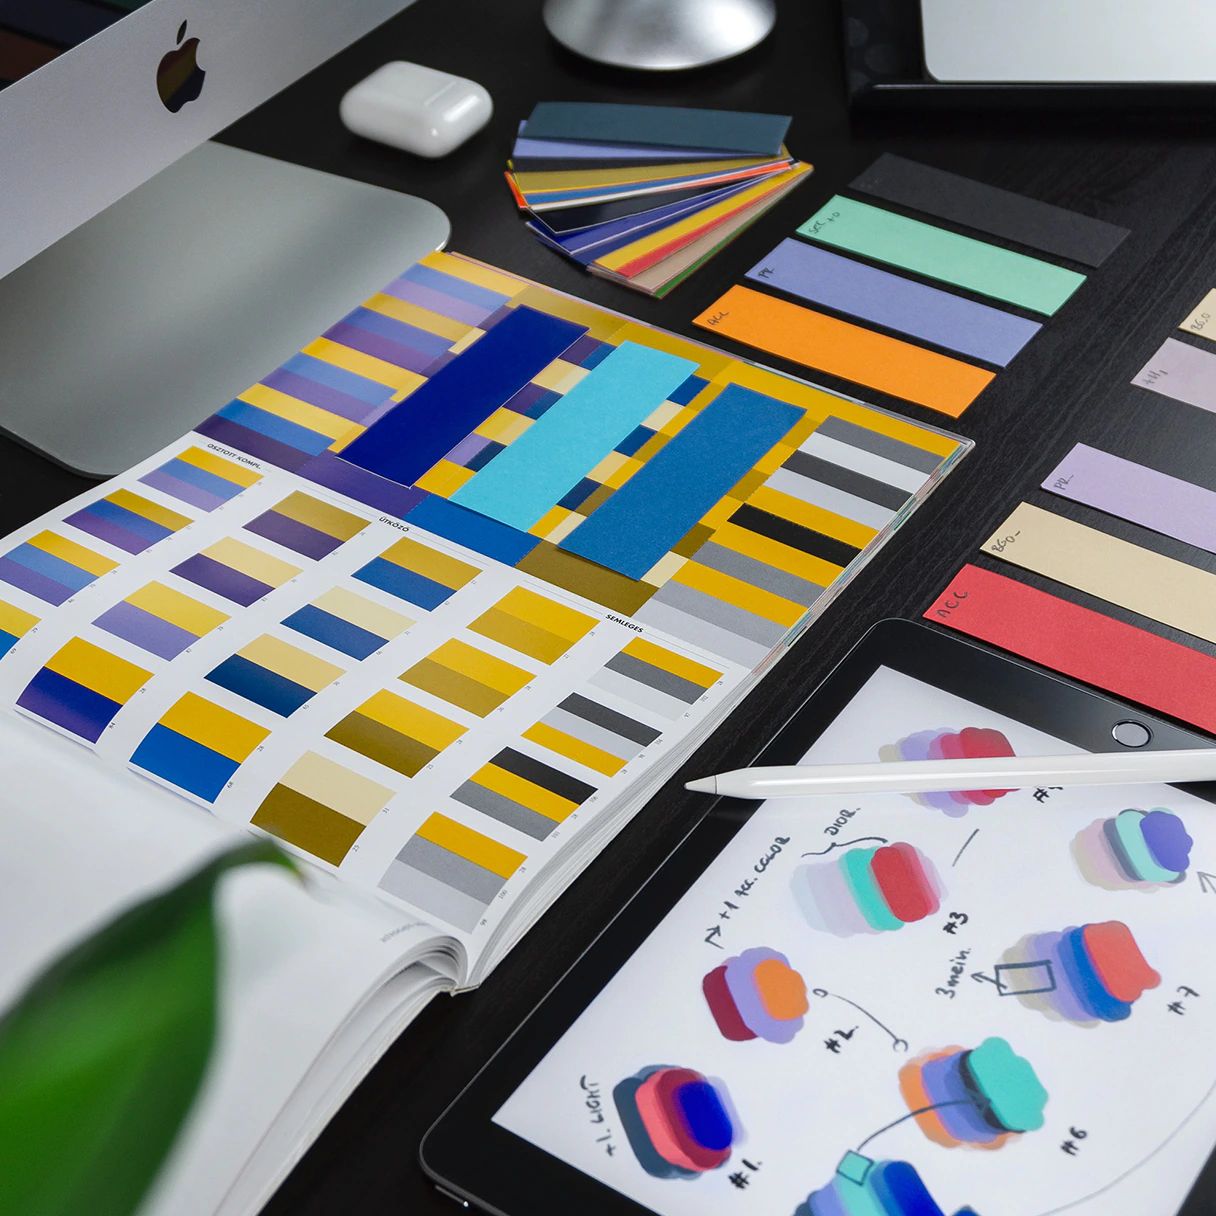 Arbeitsplatz eines Grafik Designers mit Hardware von Apple bestehend aus einem iMac und einem iPad Tablet mit iPen Stift. Auf dem Arbeitsplatz liegen Farbfächer und Broschüren.